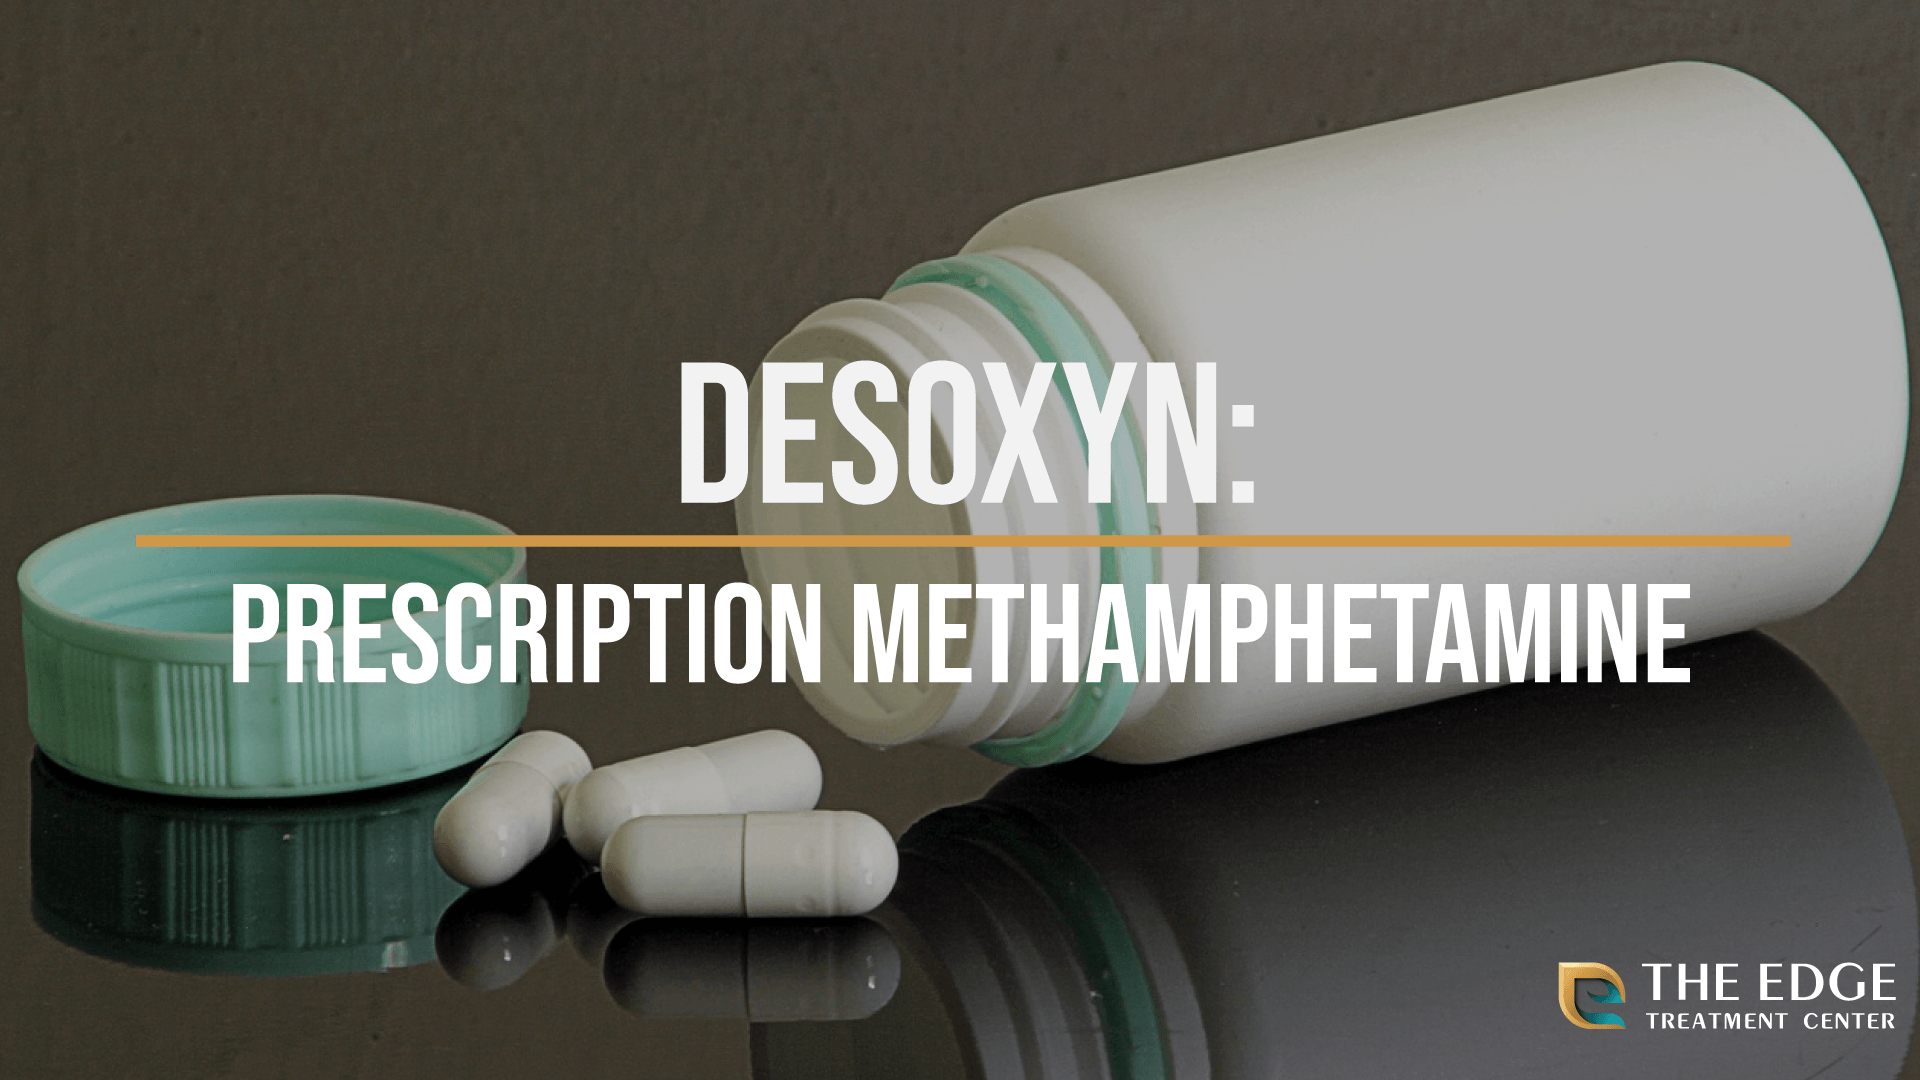 What is Desoxyn?